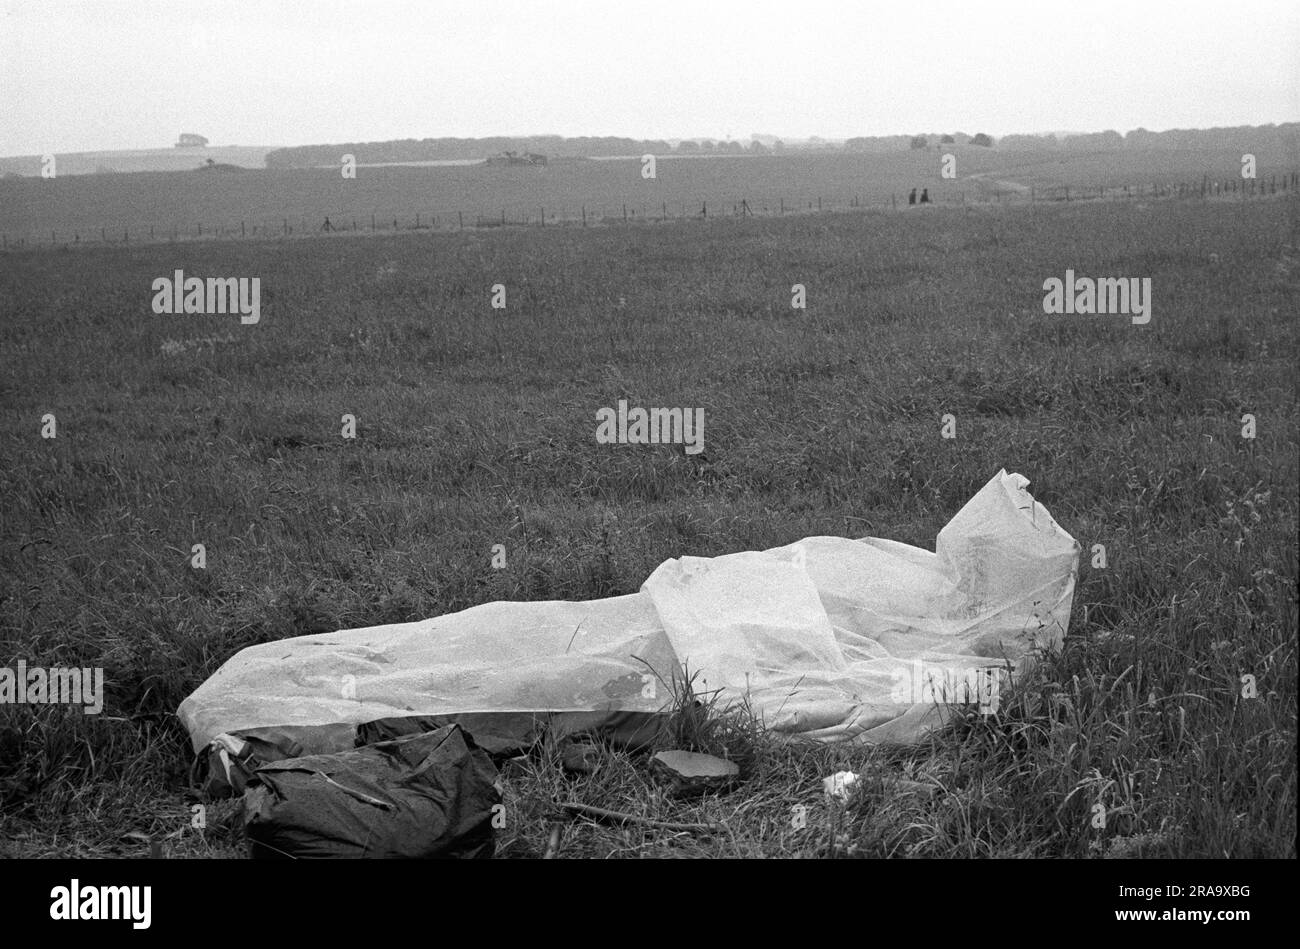 Stonehenge Free Festival au solstice d'été, Wiltshire, Angleterre vers juin 1976. Pluie d'été un hippy dort dans un sac de couchage étanche Make Shift. 1970S ROYAUME-UNI HOMER SYKES Banque D'Images